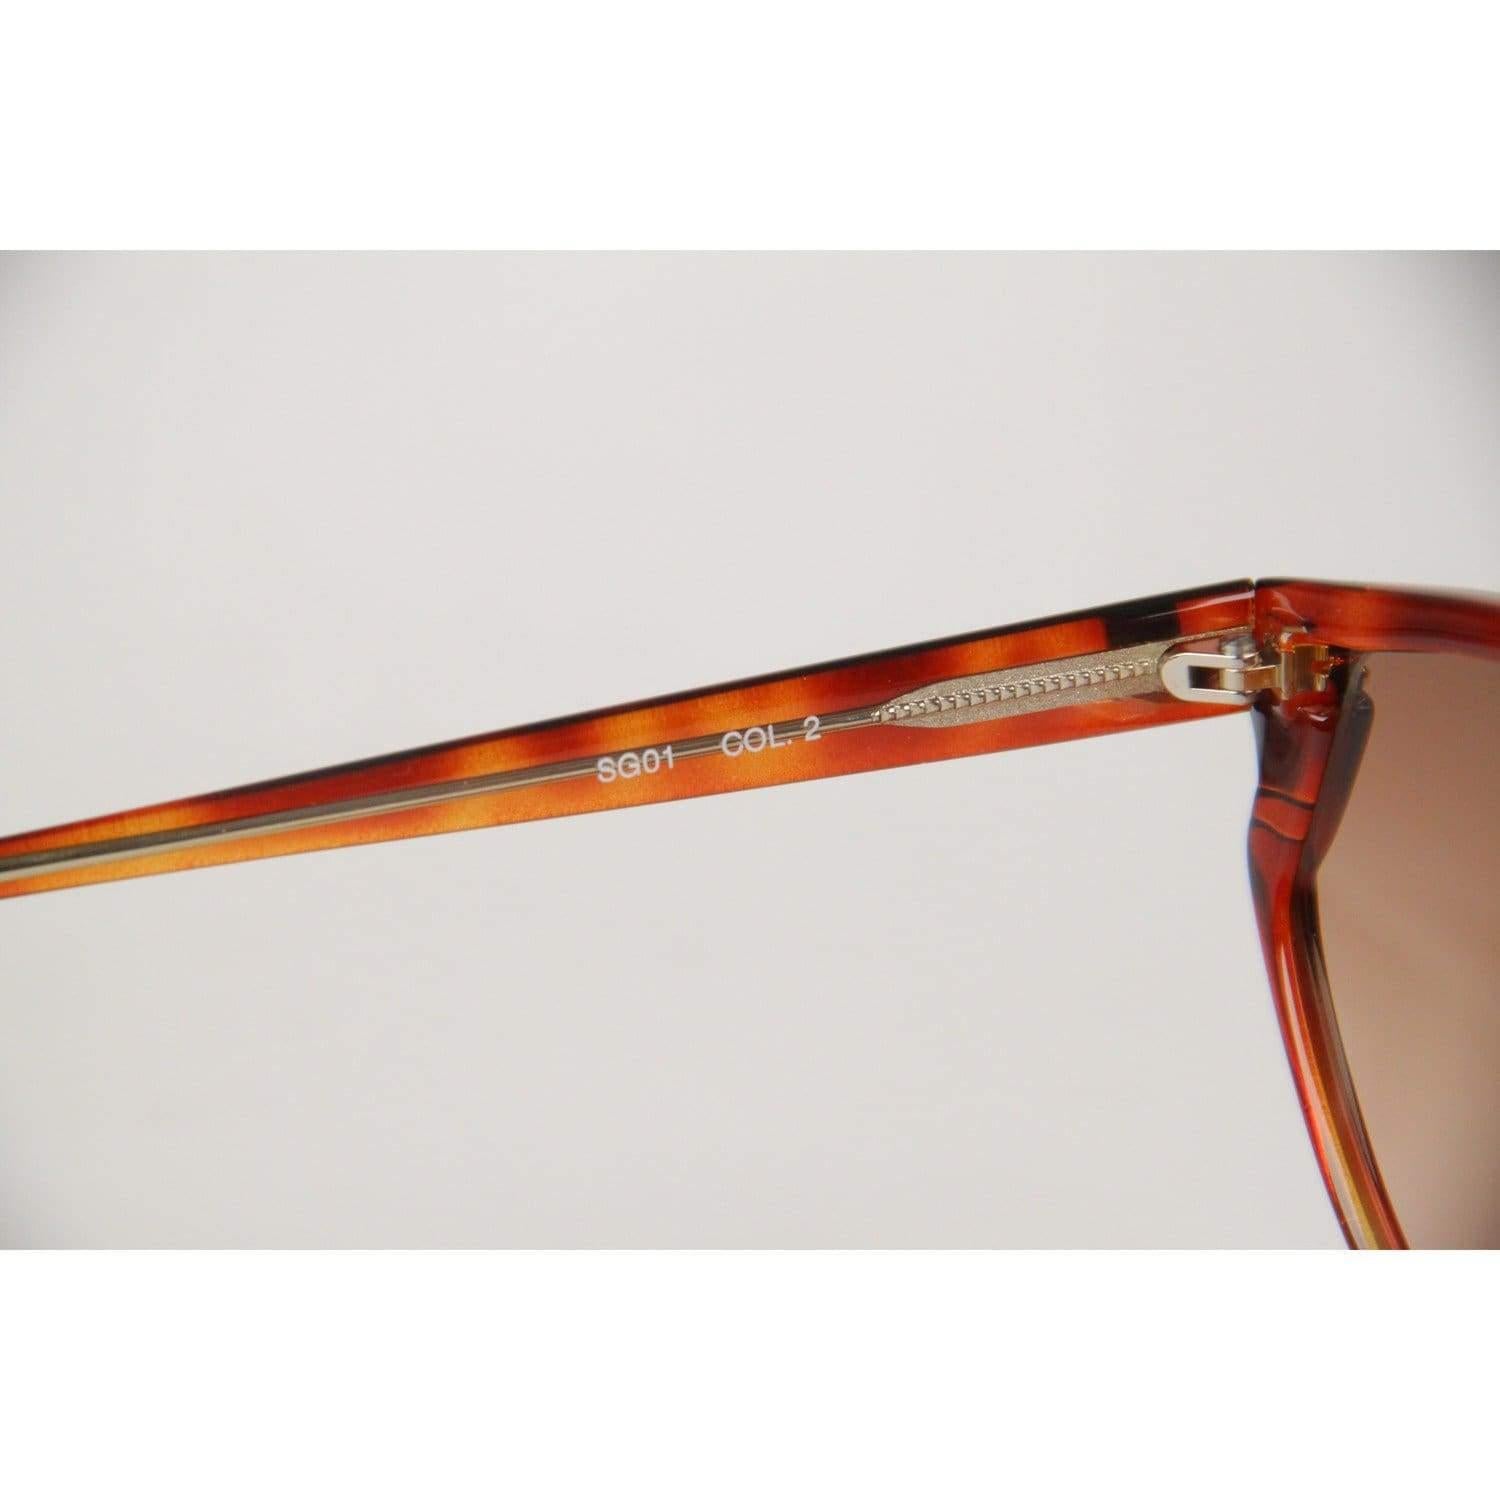 Givenchy Paris Vintage Brown Women Sunglasses mod SG01 COL 02 For Sale 1